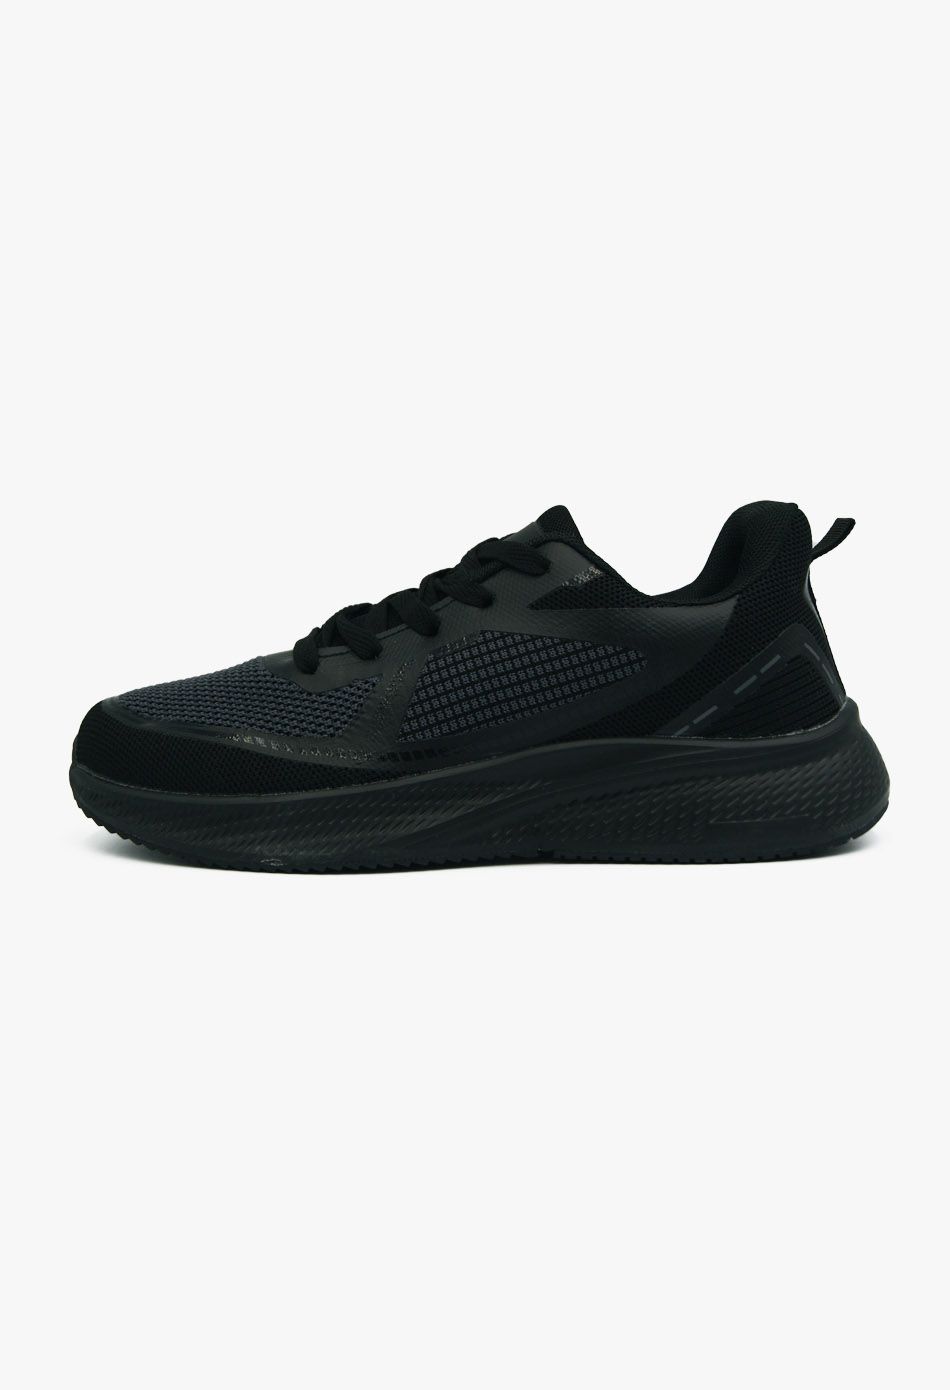 Ανδρικά Casual Sneakers Μαύρο / A69-black ΑΘΛΗΤΙΚΑ & SNEAKERS joya.gr